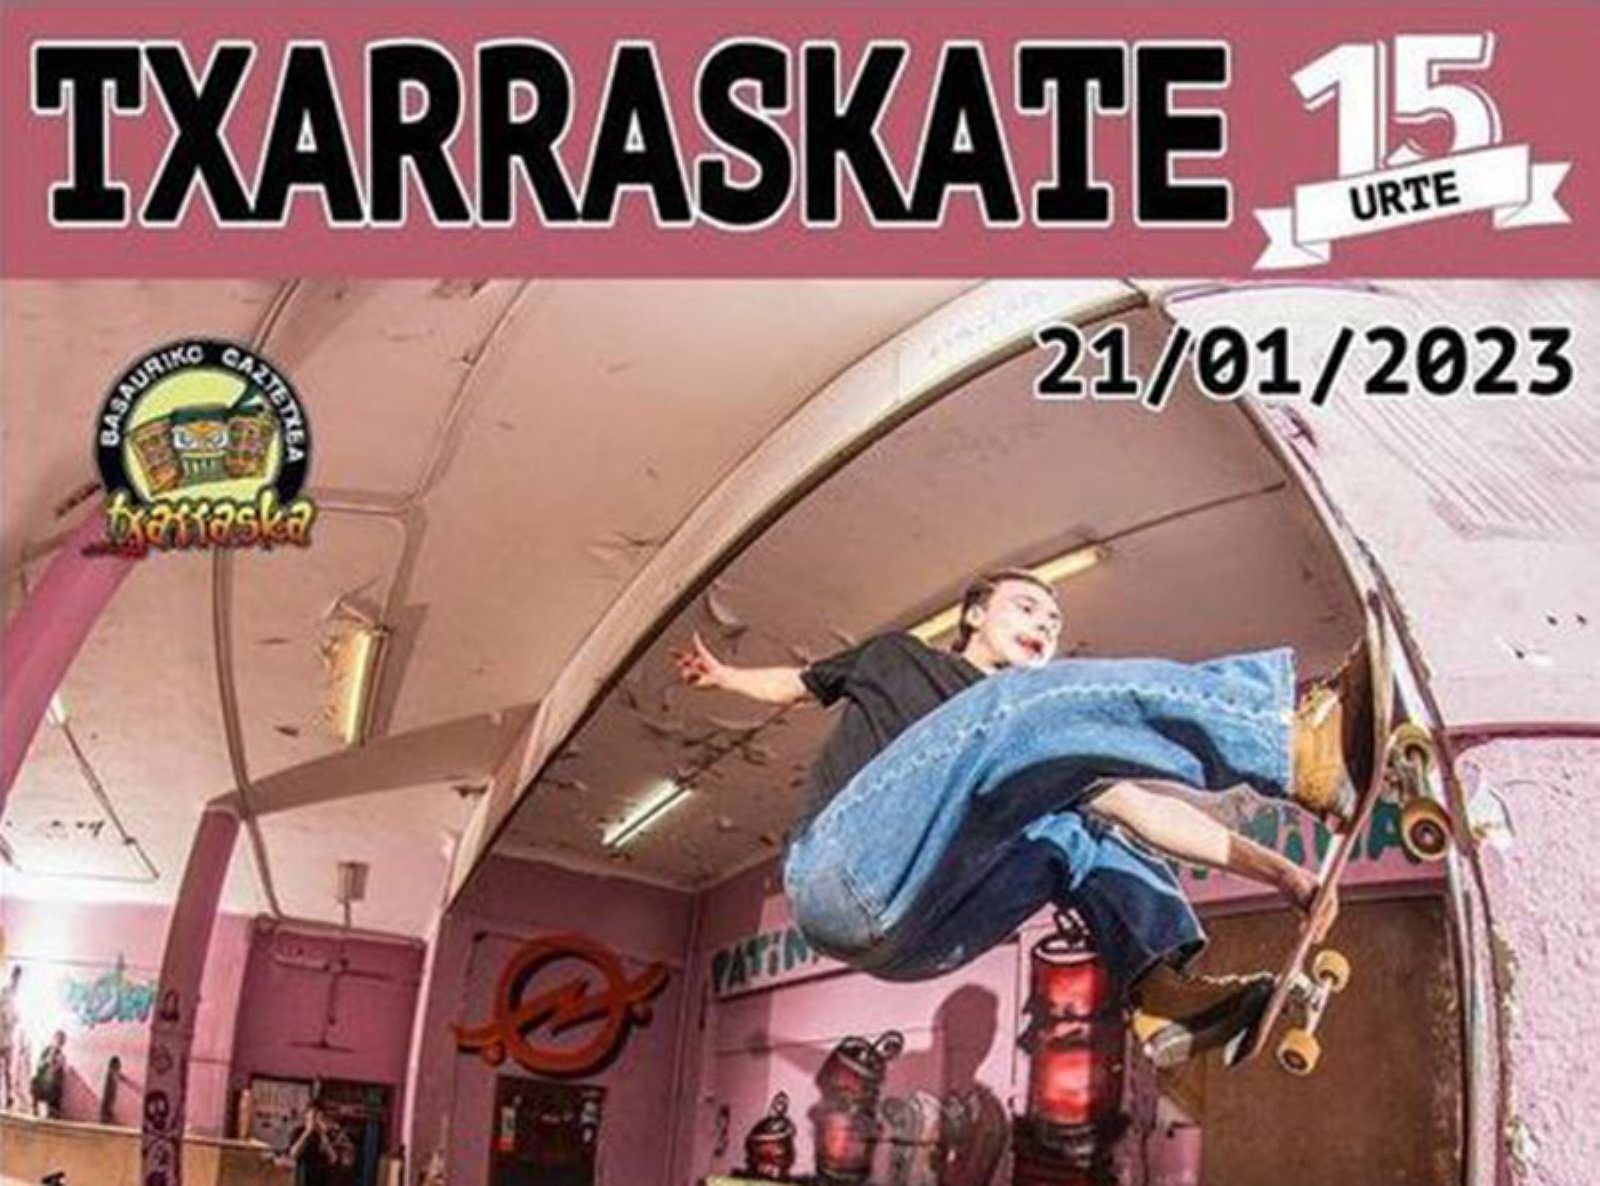 Txarraskate, evento de skate en Basauri (Bizkaia)